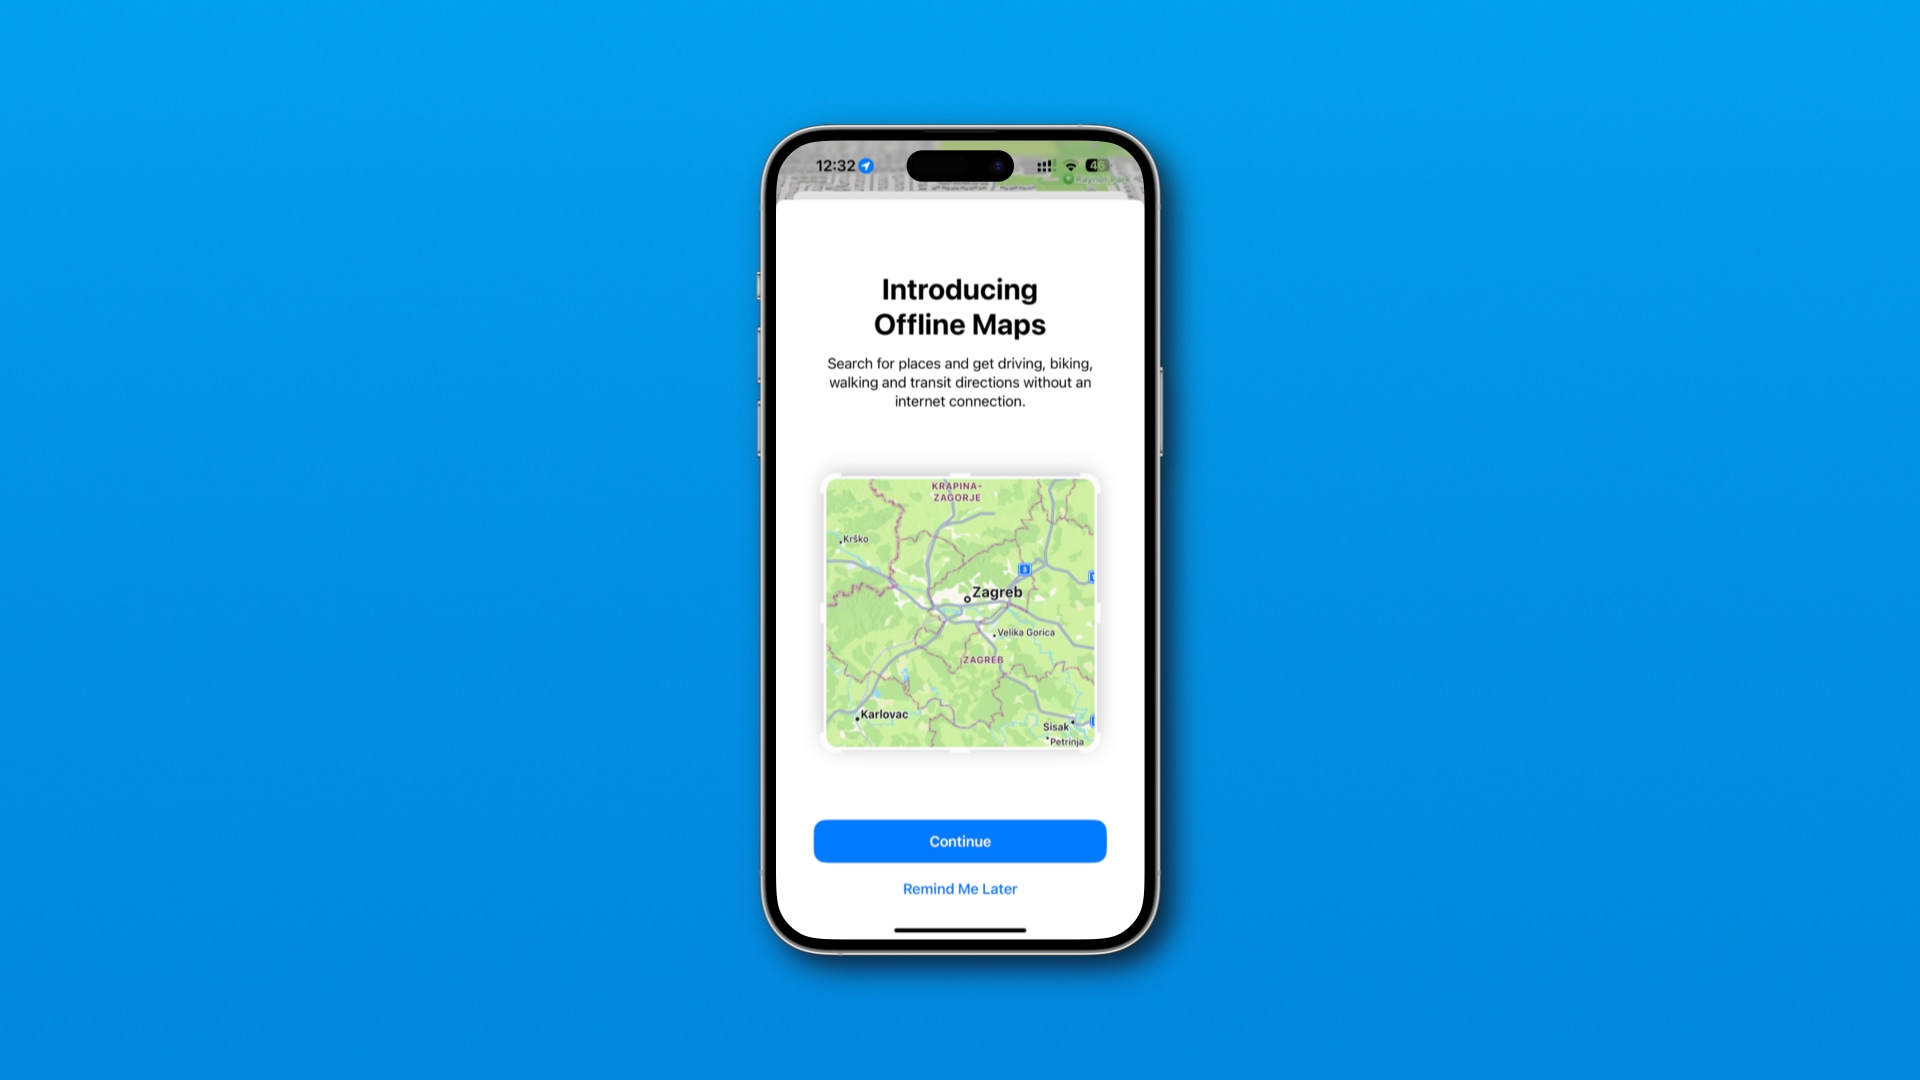 Splash screen in iOS 17's Maps app promoting offline navigation